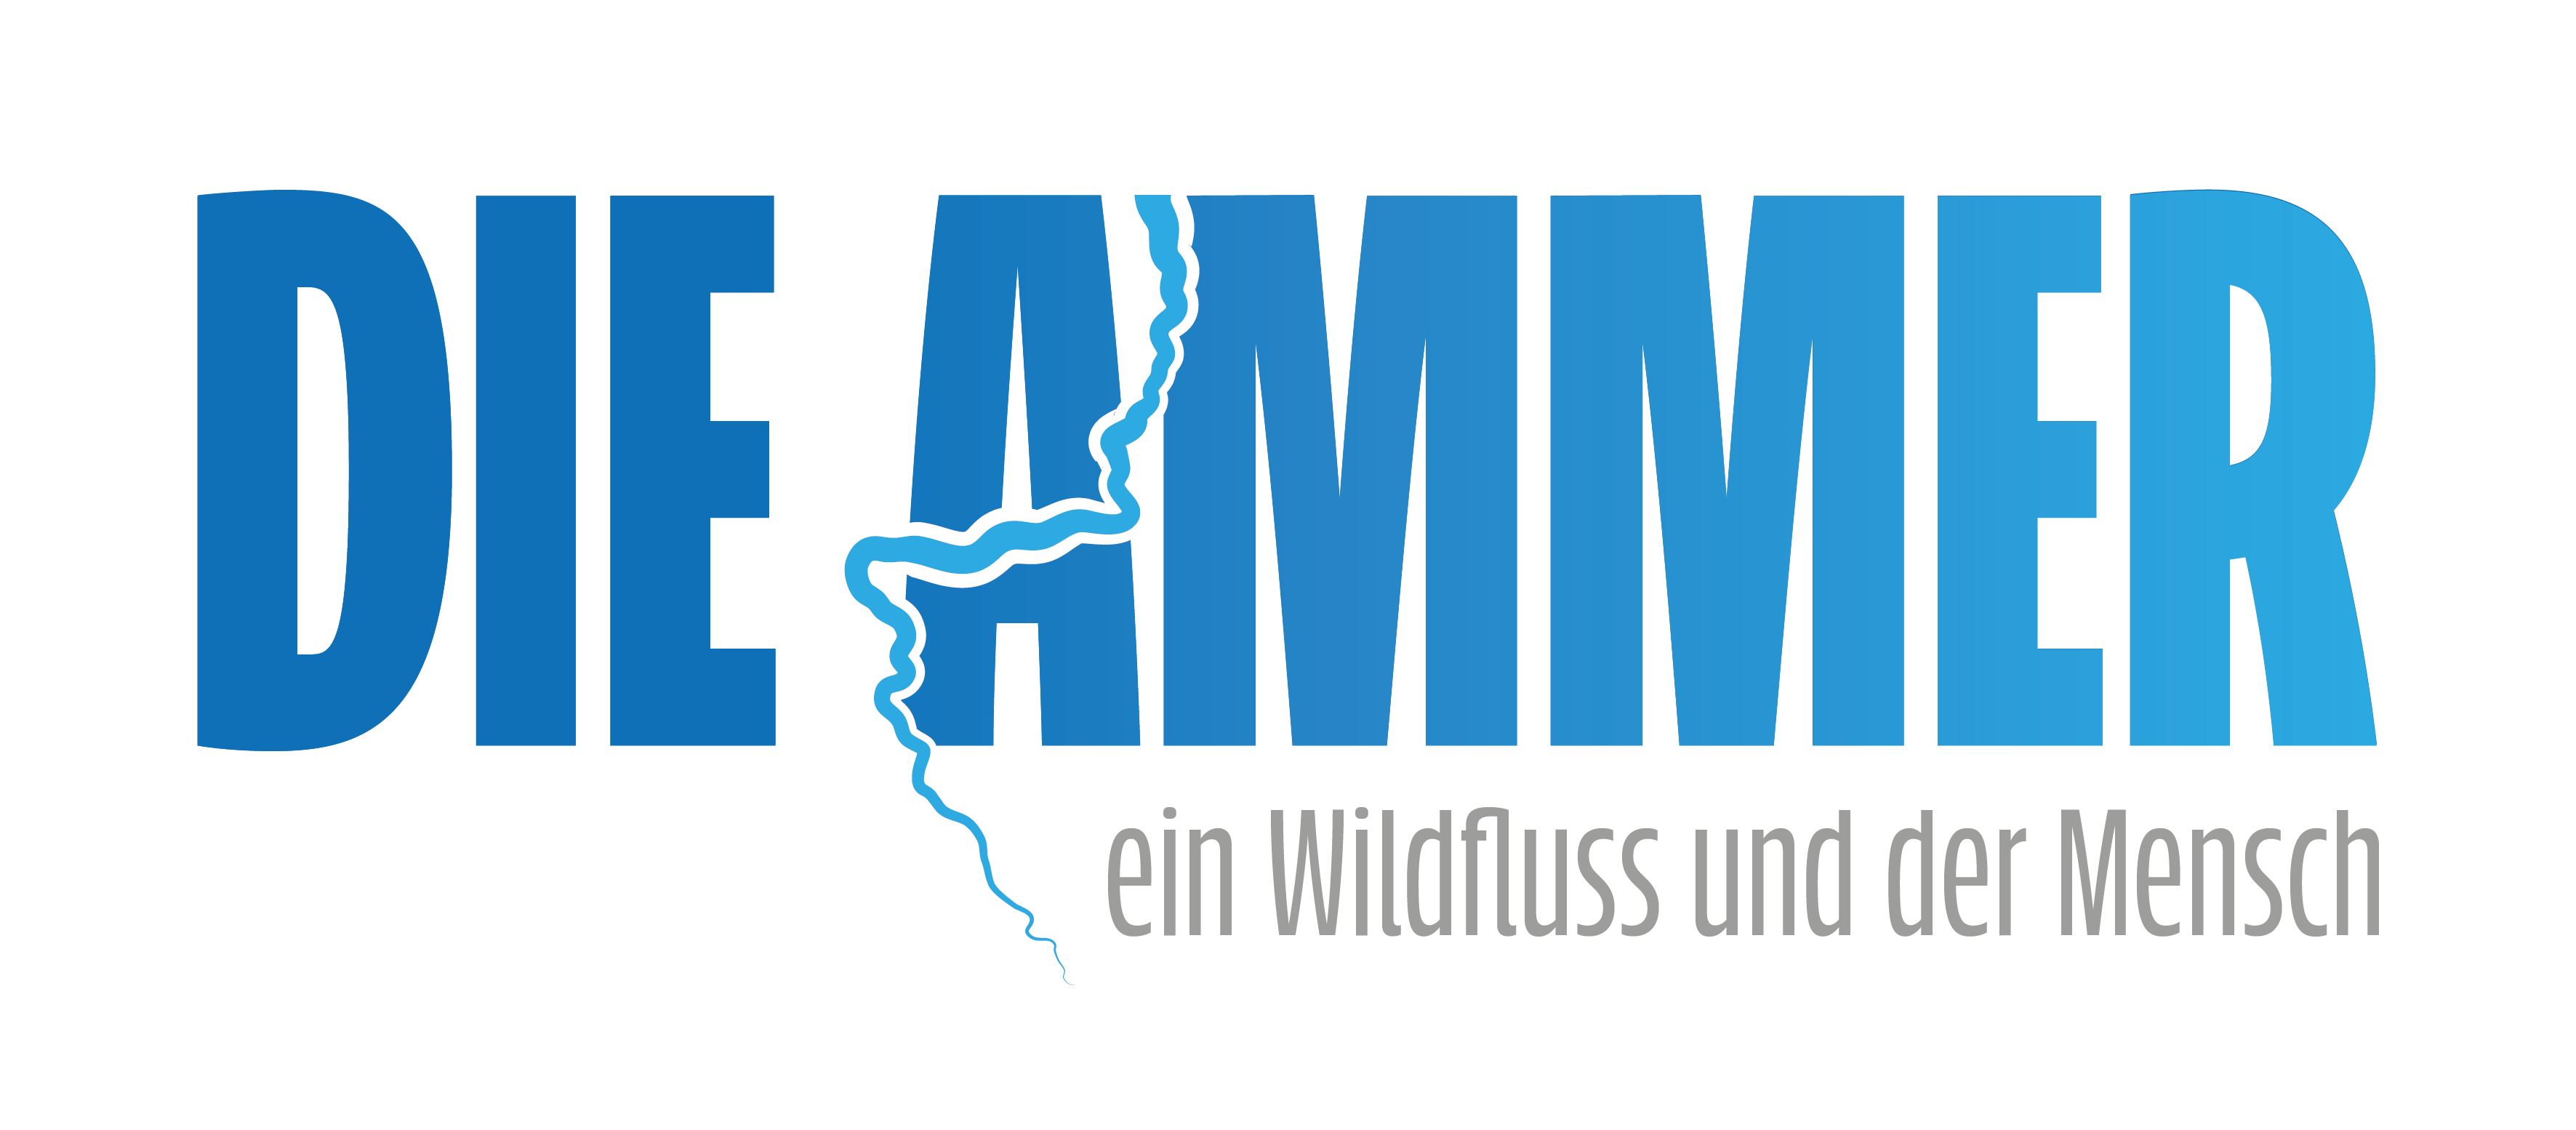 fuenfseen logo die ammer Wildfluss bayern deutschland